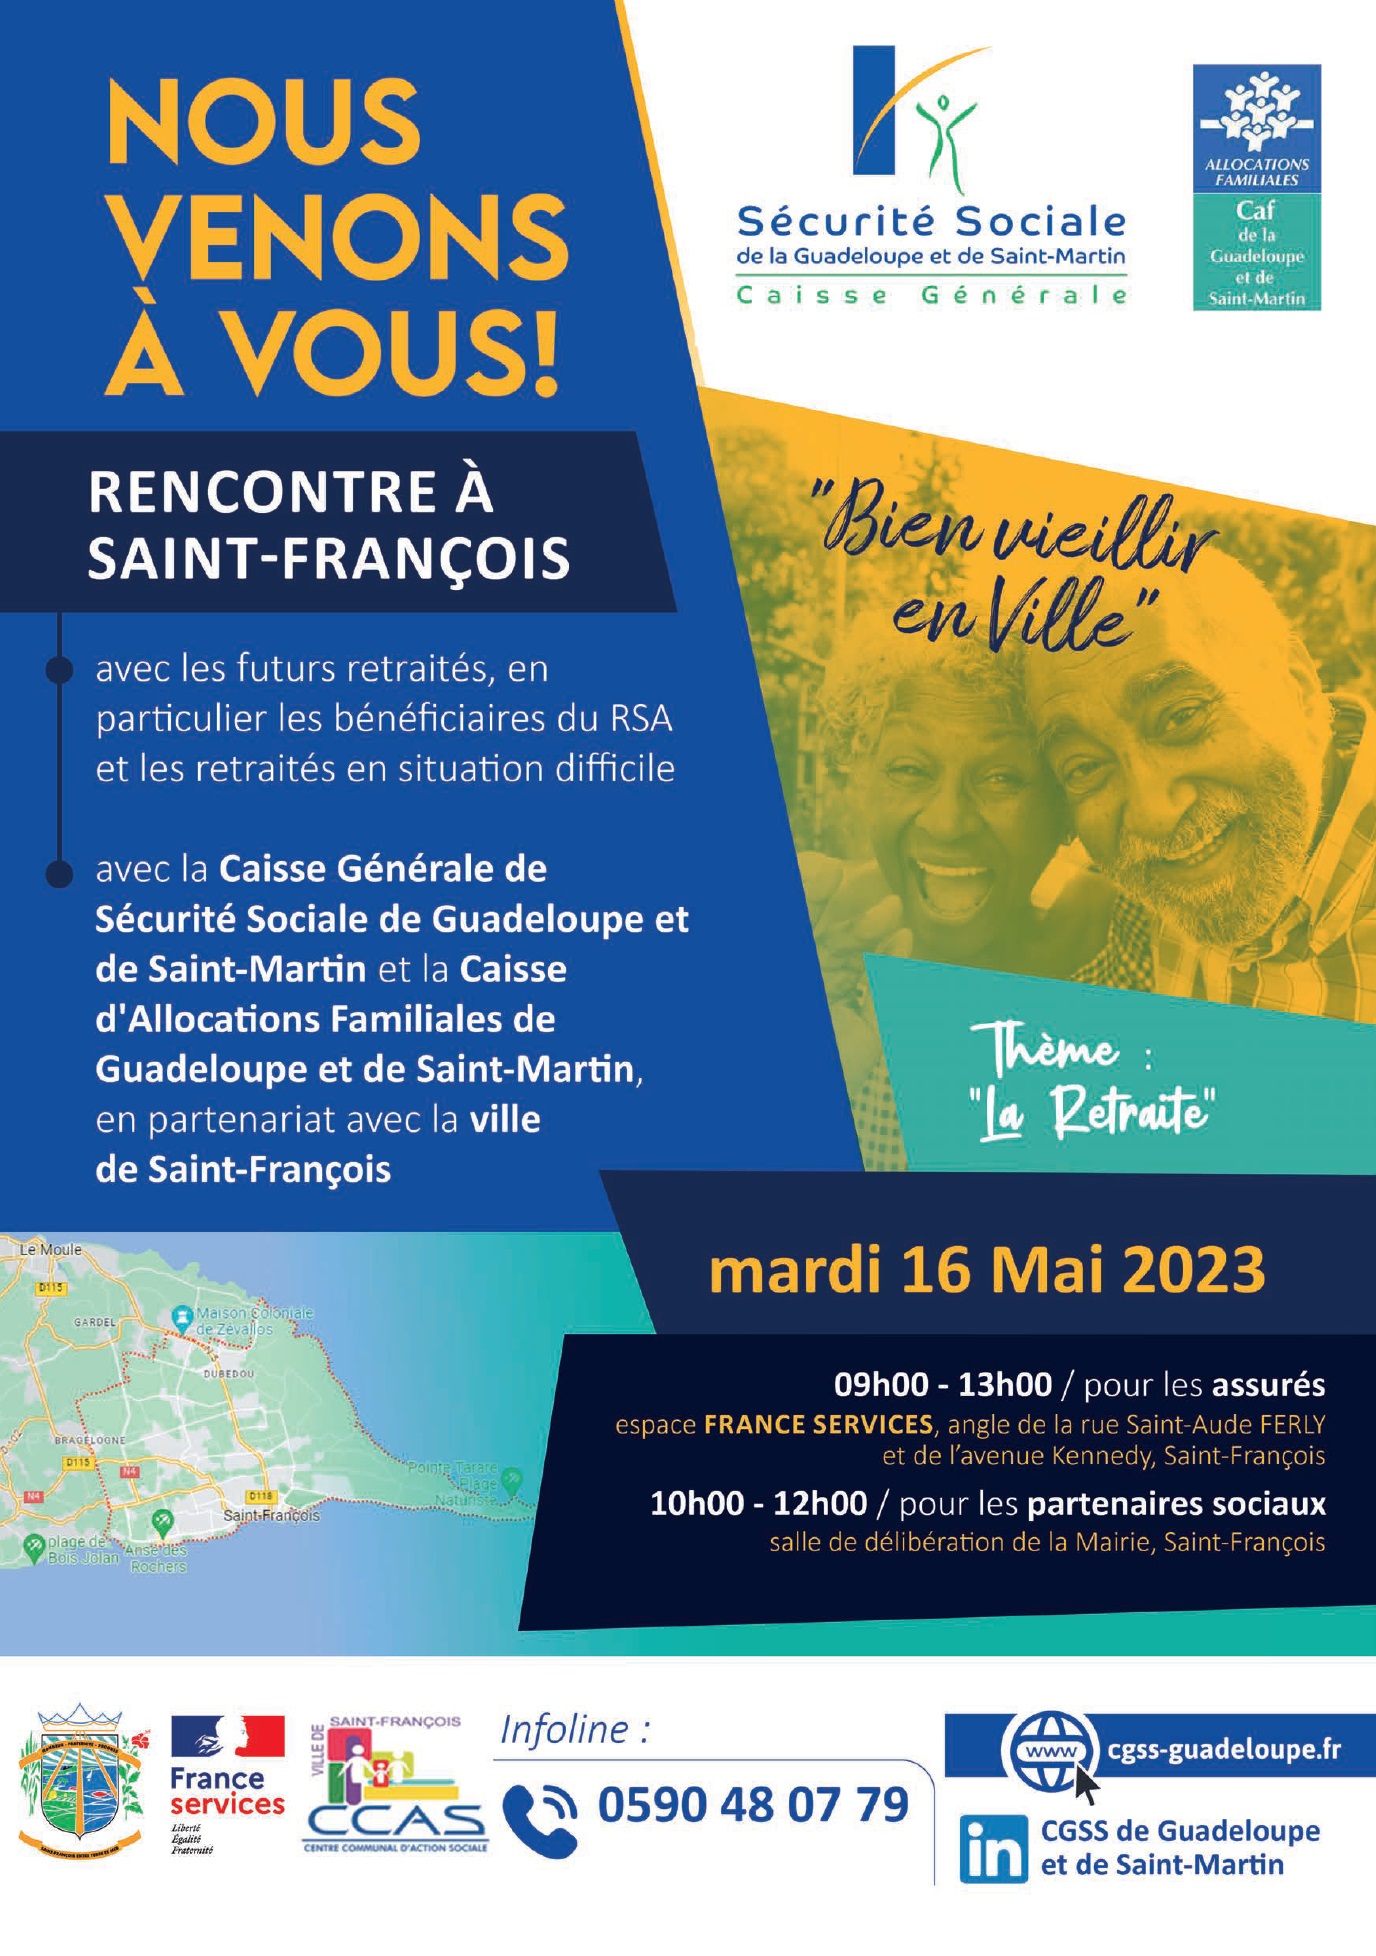 CGSS/Caf : la tournée des communes se rend à Saint-François !